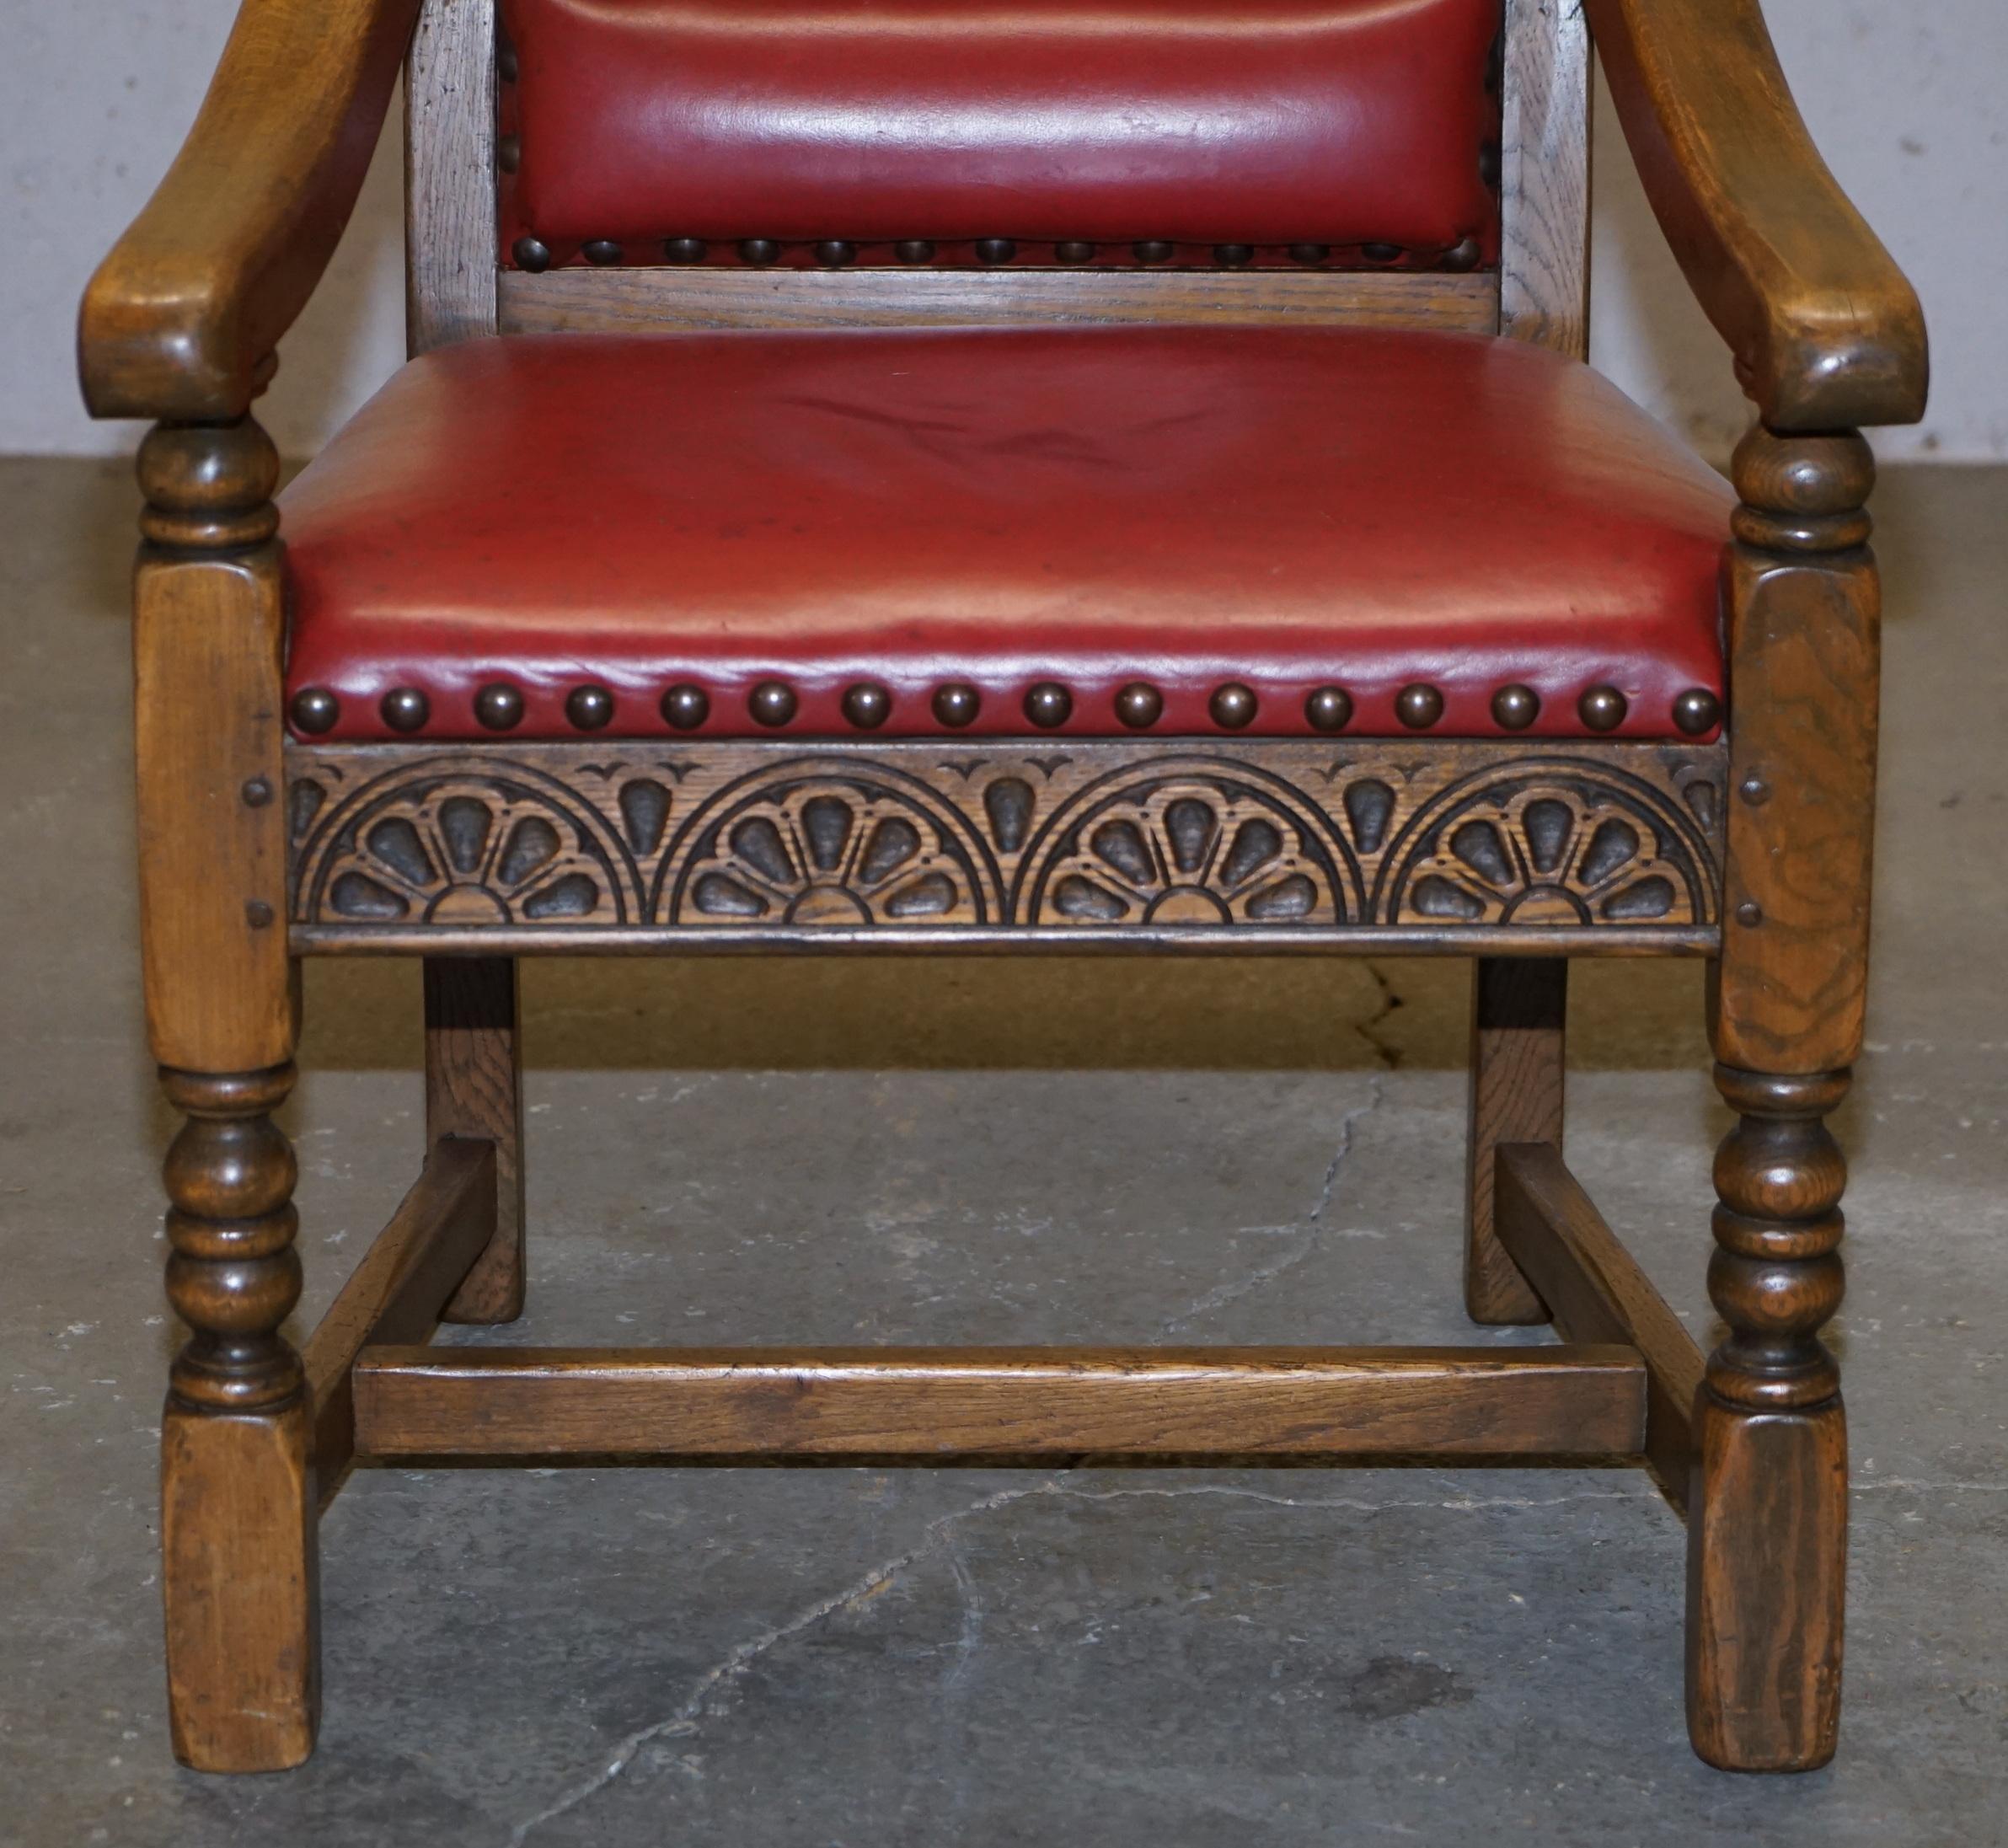 Original Elizabeth II Silver Jubilee Throne Armchair English Oxblood Oak Leather 1